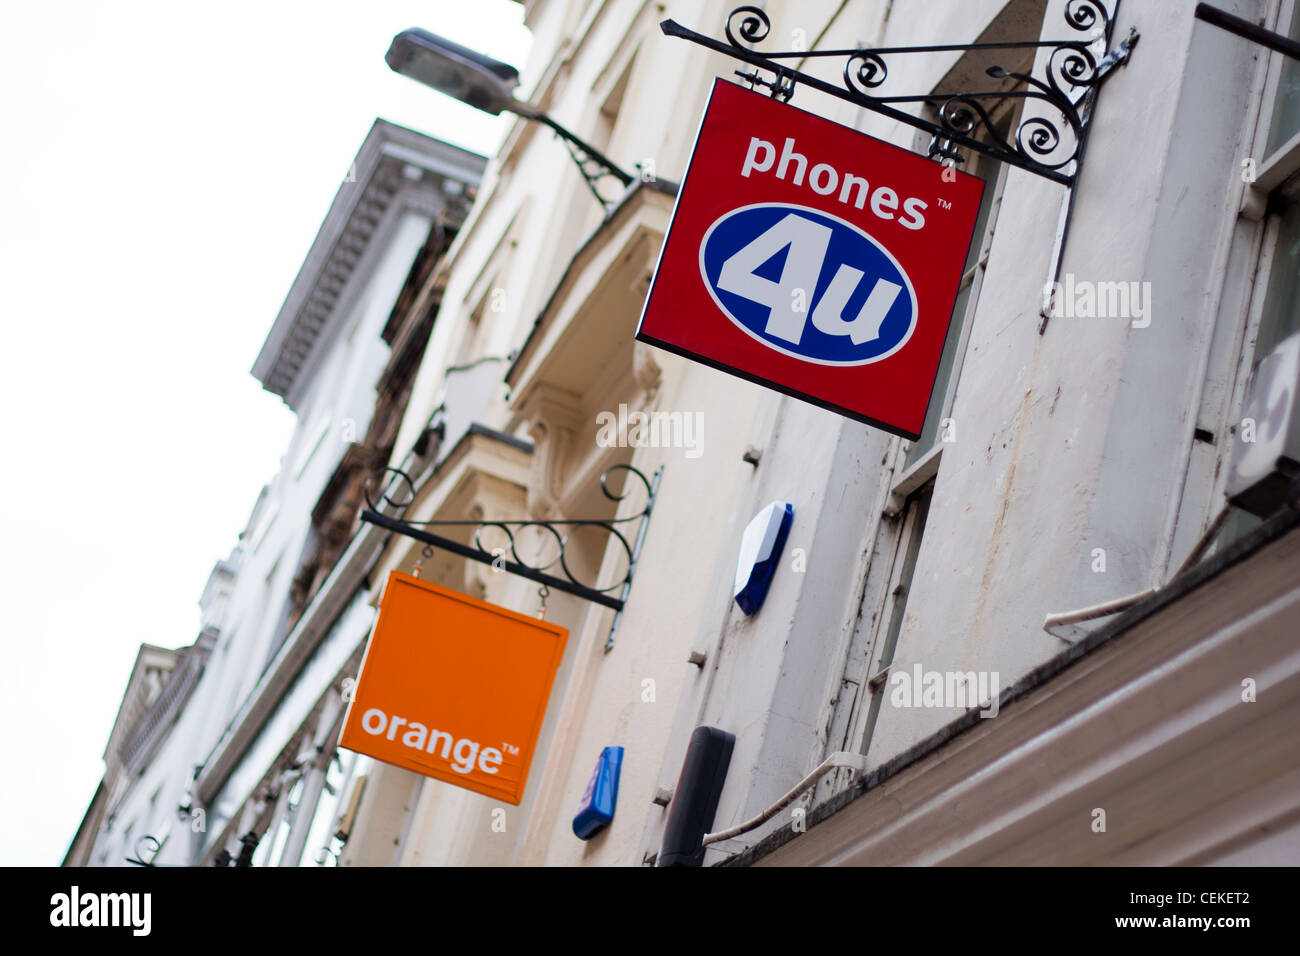 Wettbewerb im Bereich der mobilen Telekommunikation Telefone Industrie mit Orange, 4 Telefone Sie und Vodafone Zeichen außerhalb ihrer Geschäfte. Stockfoto